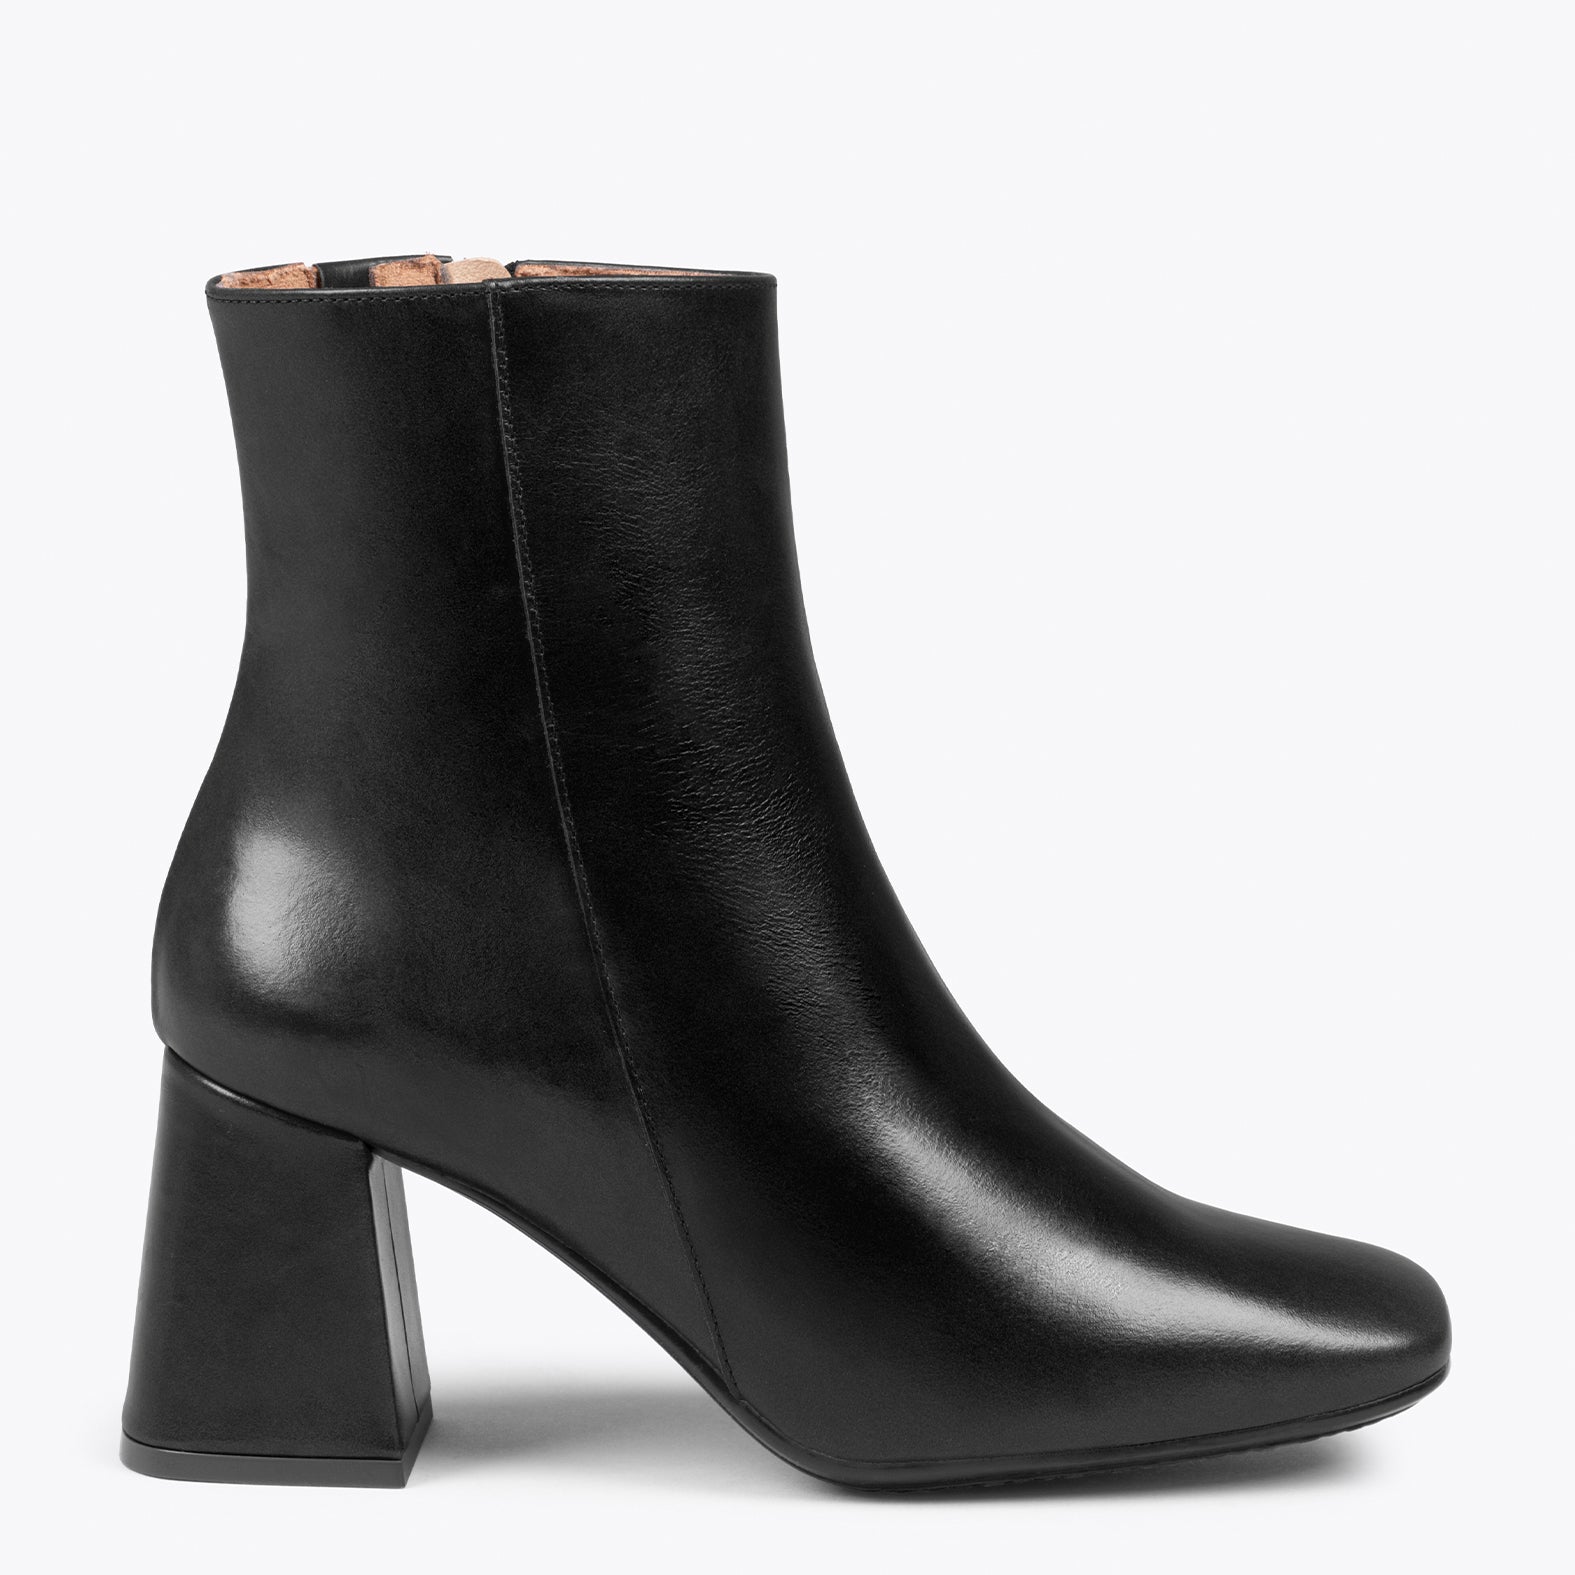 PARIS – BLACK square toe bootie with block heel